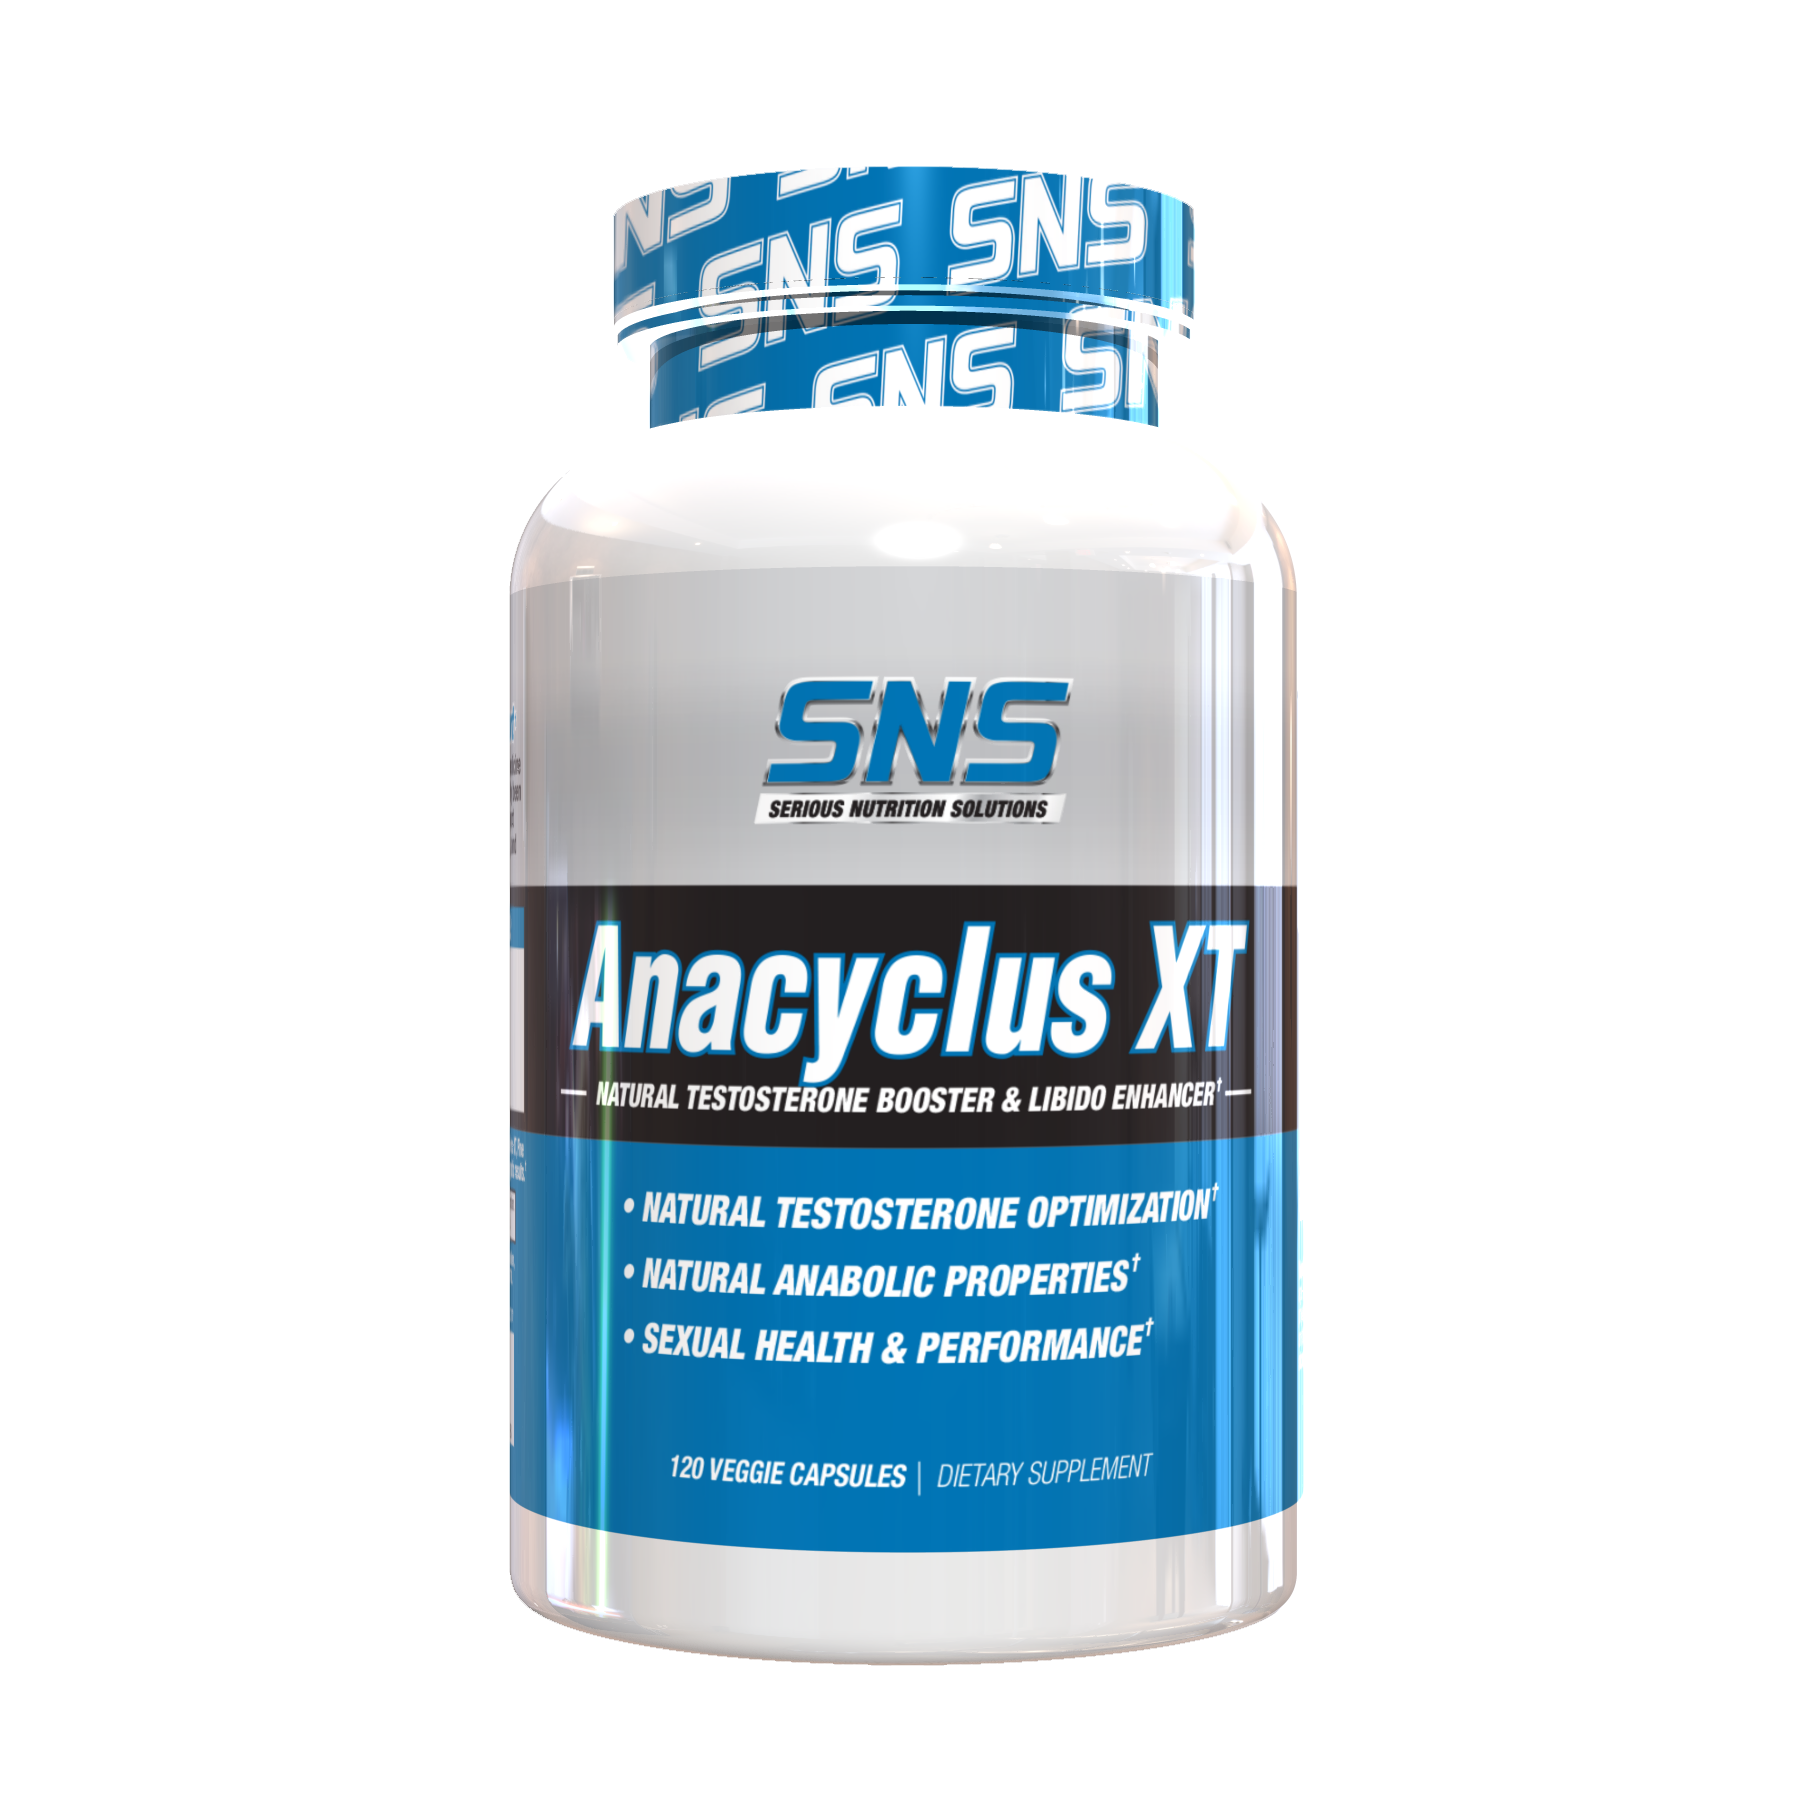 Anacyclus XT